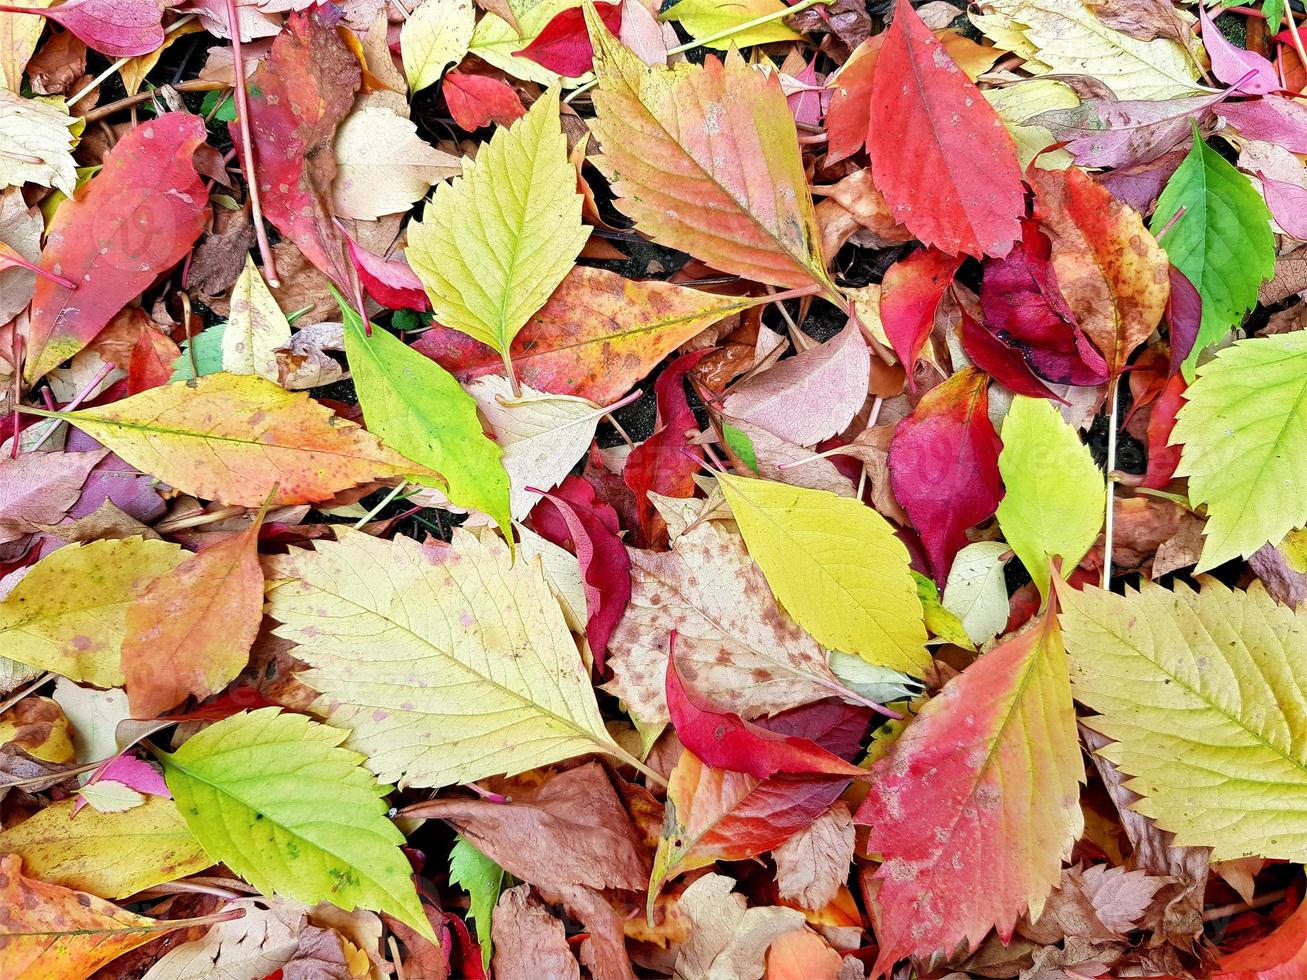 tapete de outono de folhagem caída colorida - amarelo, laranja, vermelho, carmesim, verde, marrom. diferentes folhas de outono de árvores e folhas de uvas solteiras de escalada. luz de fundo brilhante. foto